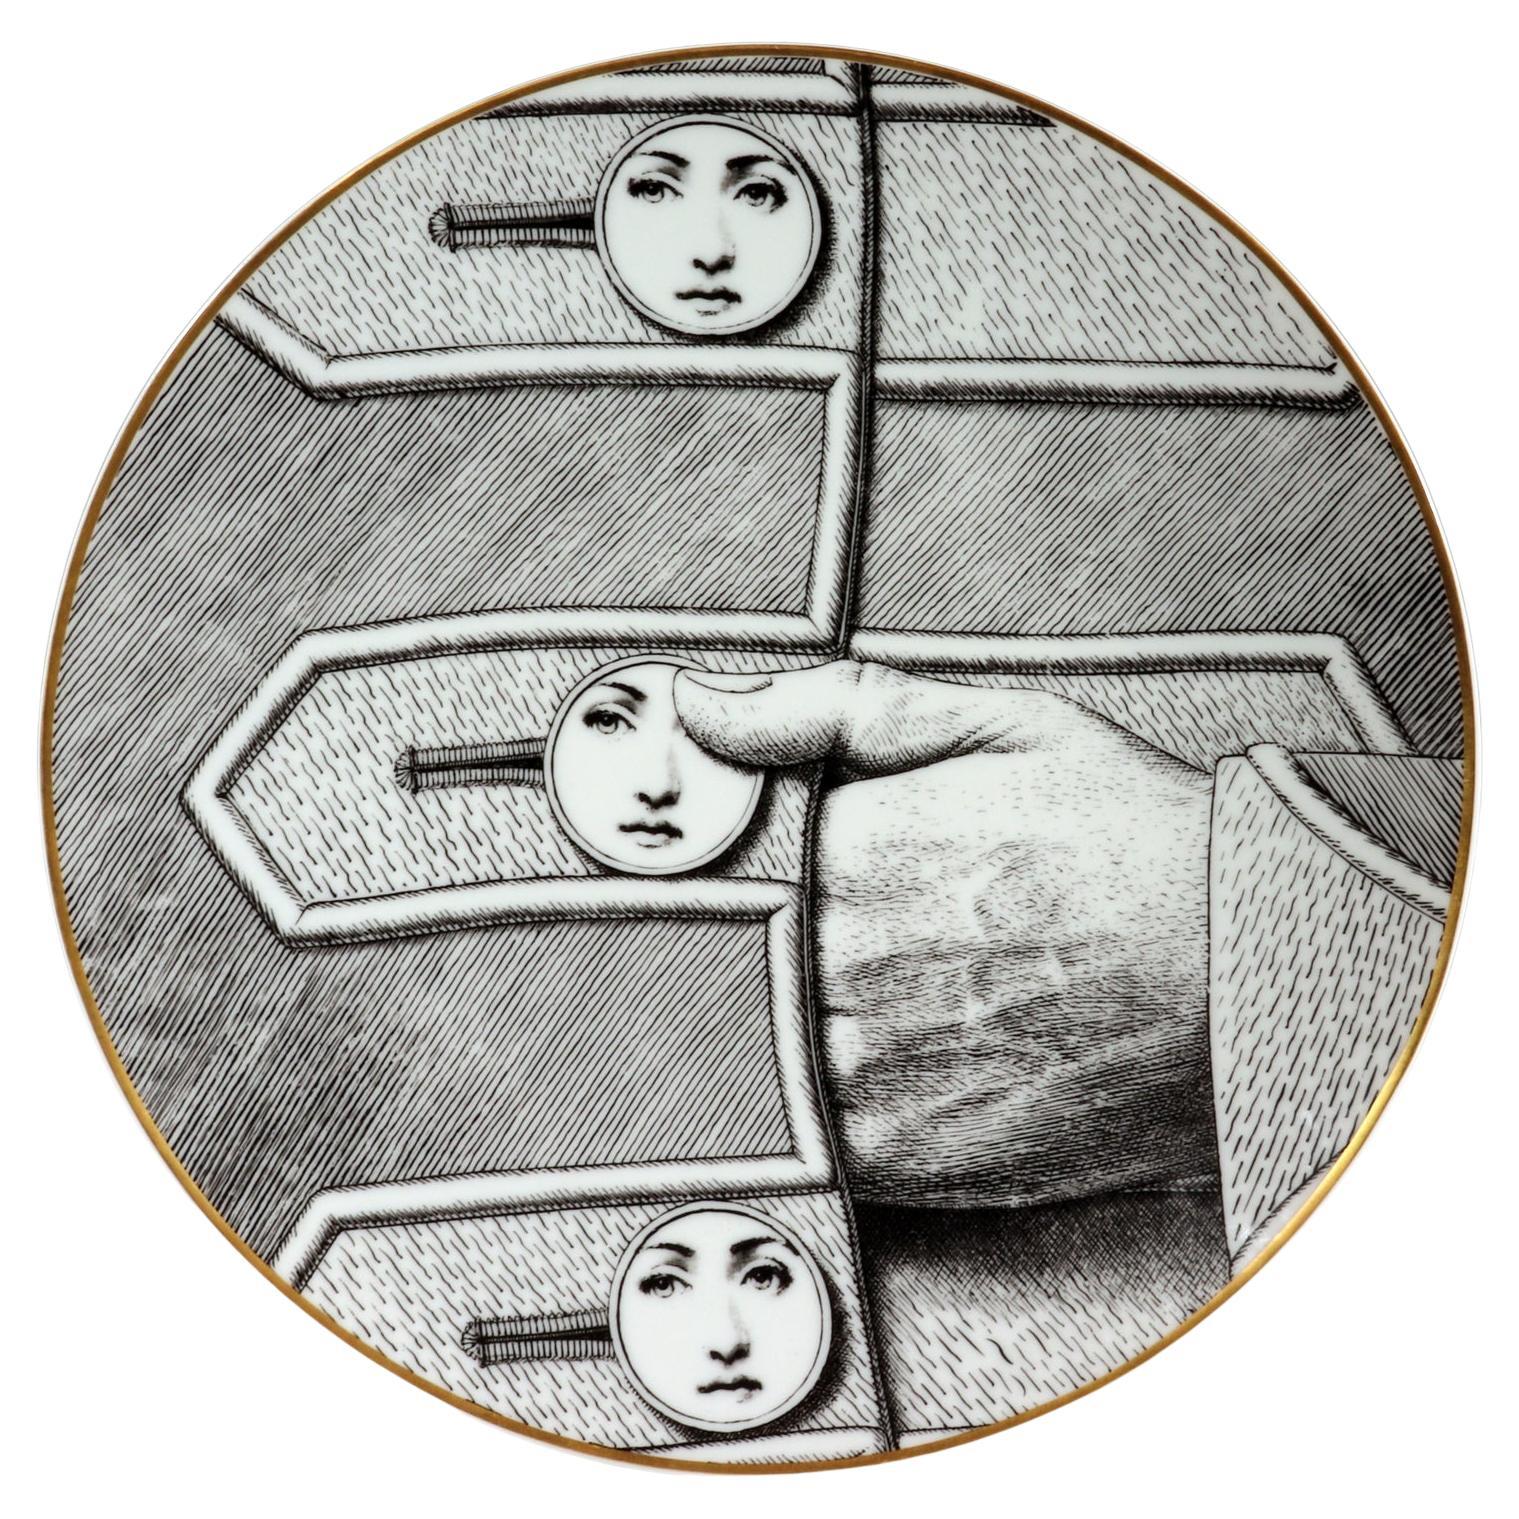 Rosenthal-Porzellanthemen und Variationen von Piero Fornasetti mit Knöpfen, Motiv 13